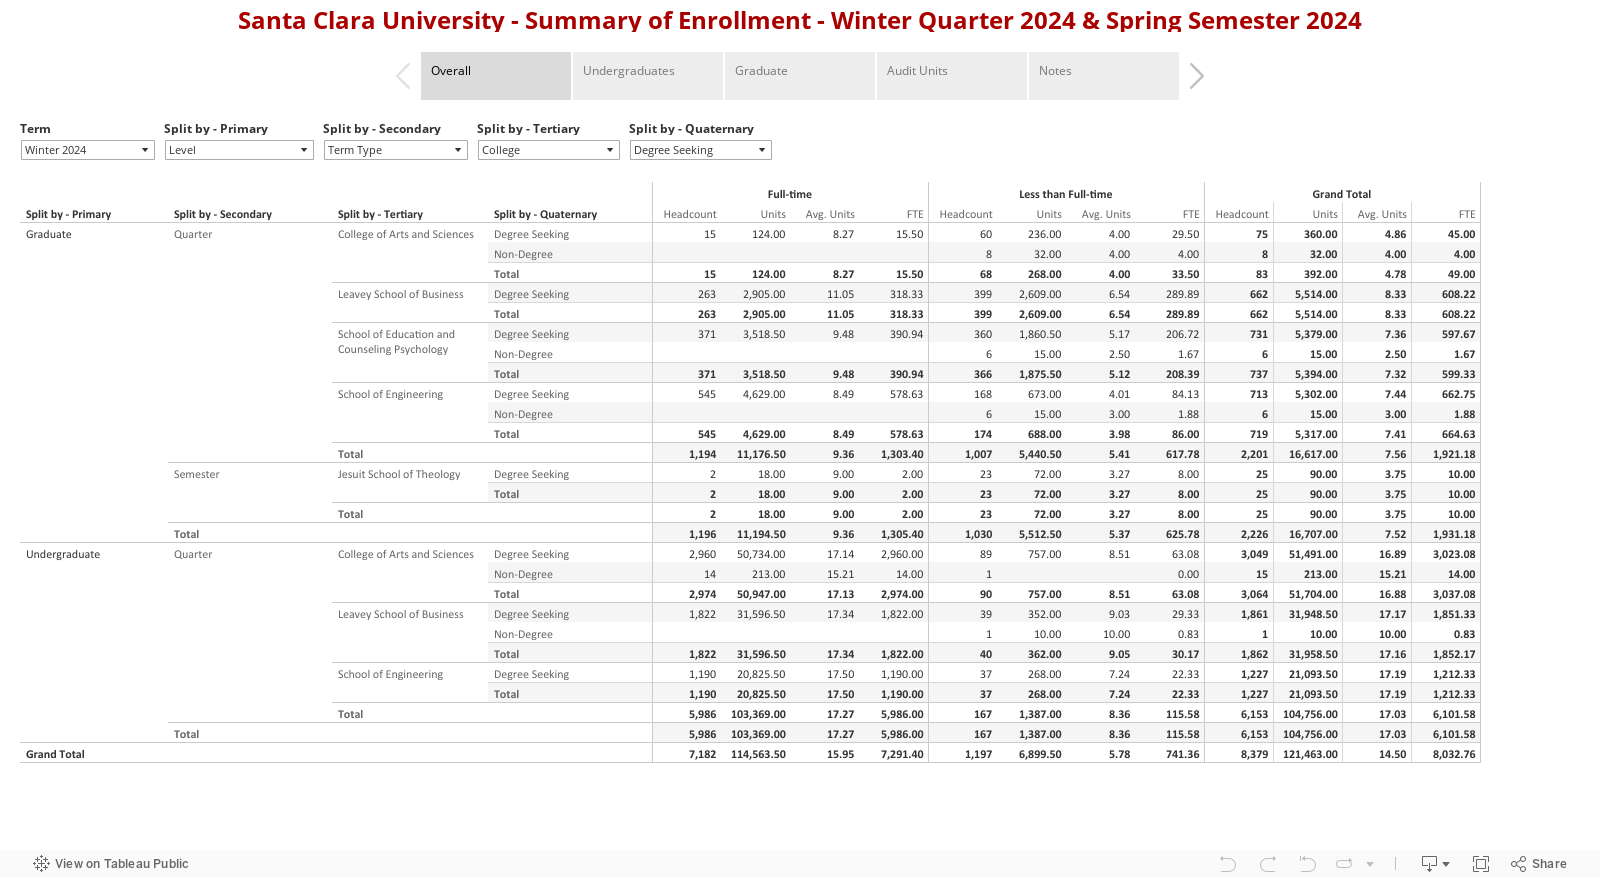 Santa Clara University - Summary of Enrollment 